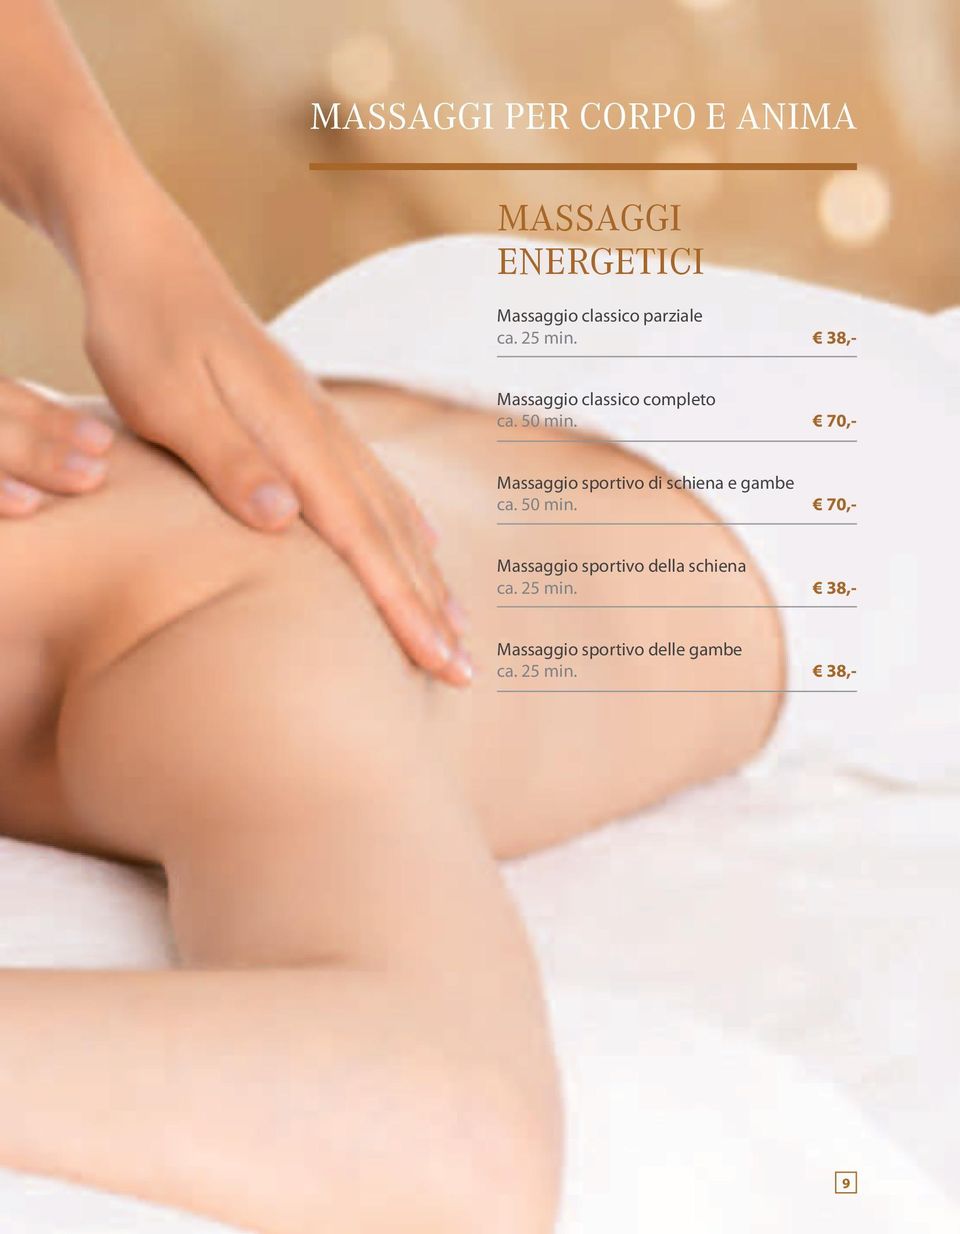 38,- Massaggio classico completo Massaggio sportivo di schiena e